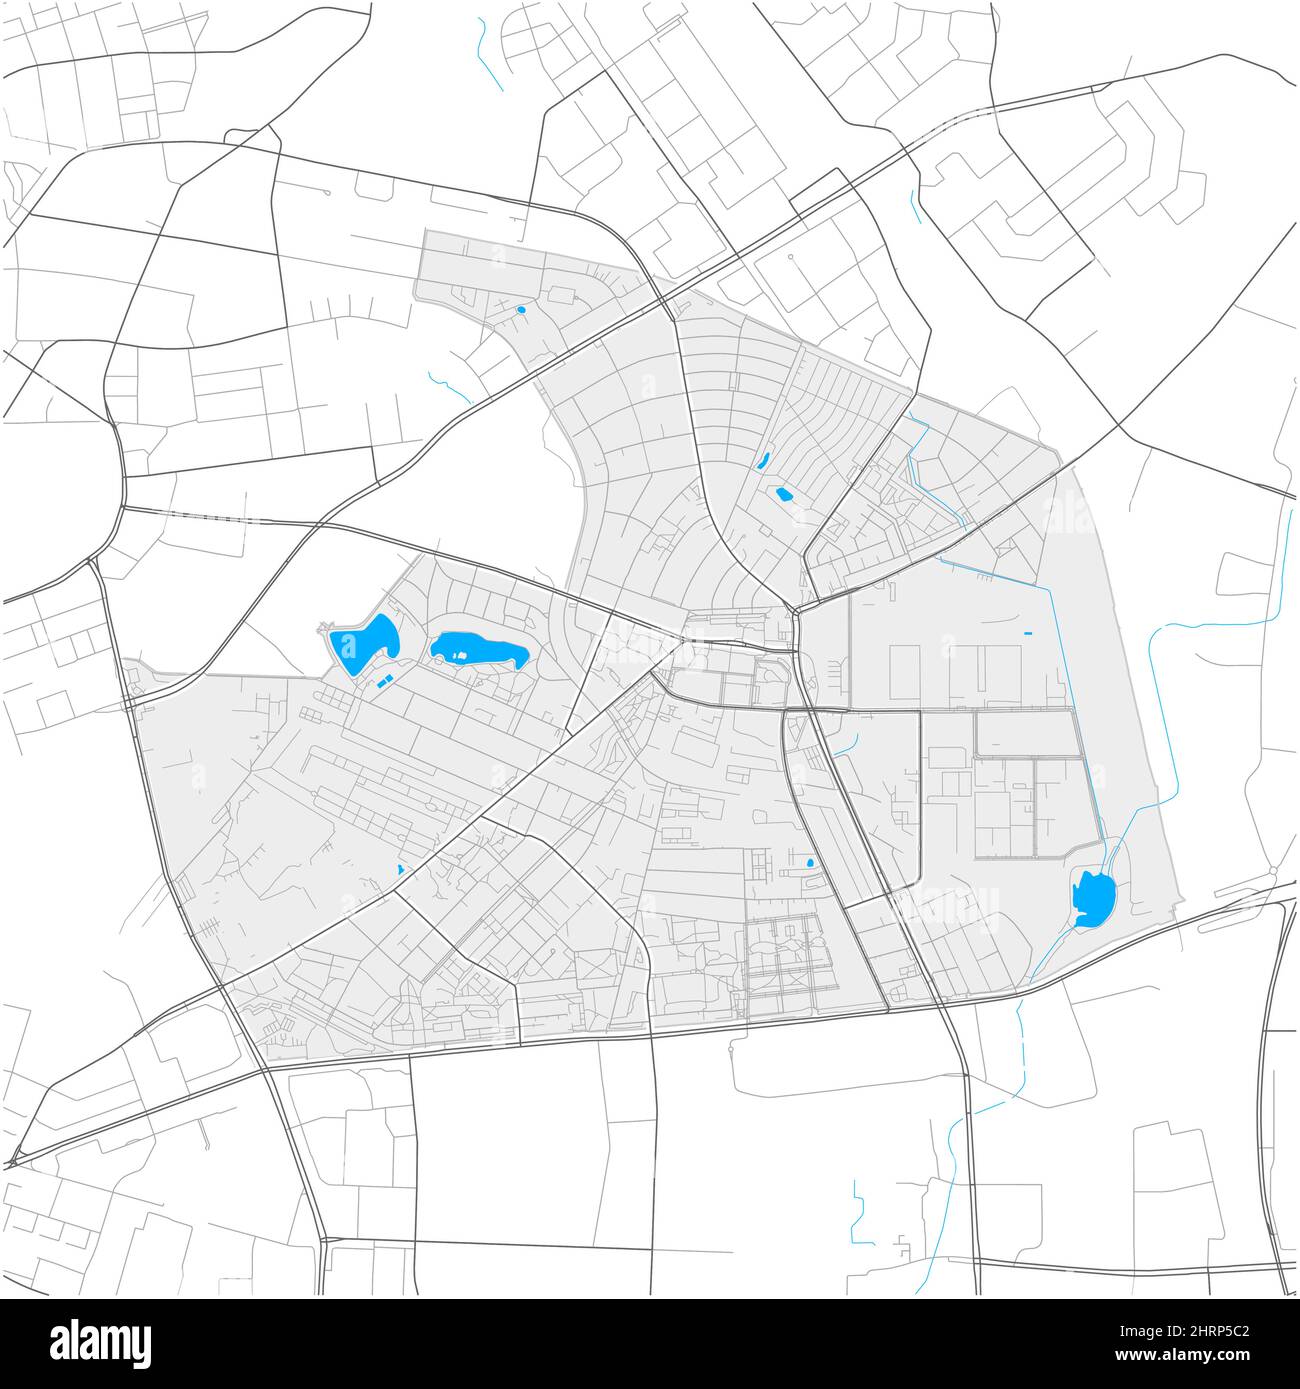 Hohenschönhausen, Berlin, DEUTSCHLAND, hochdetaillierte Vektorkarte mit Stadtgrenzen und editierbaren Pfaden. Weiße Umrisse für Hauptstraßen. Viele kleinere Pat Stock Vektor